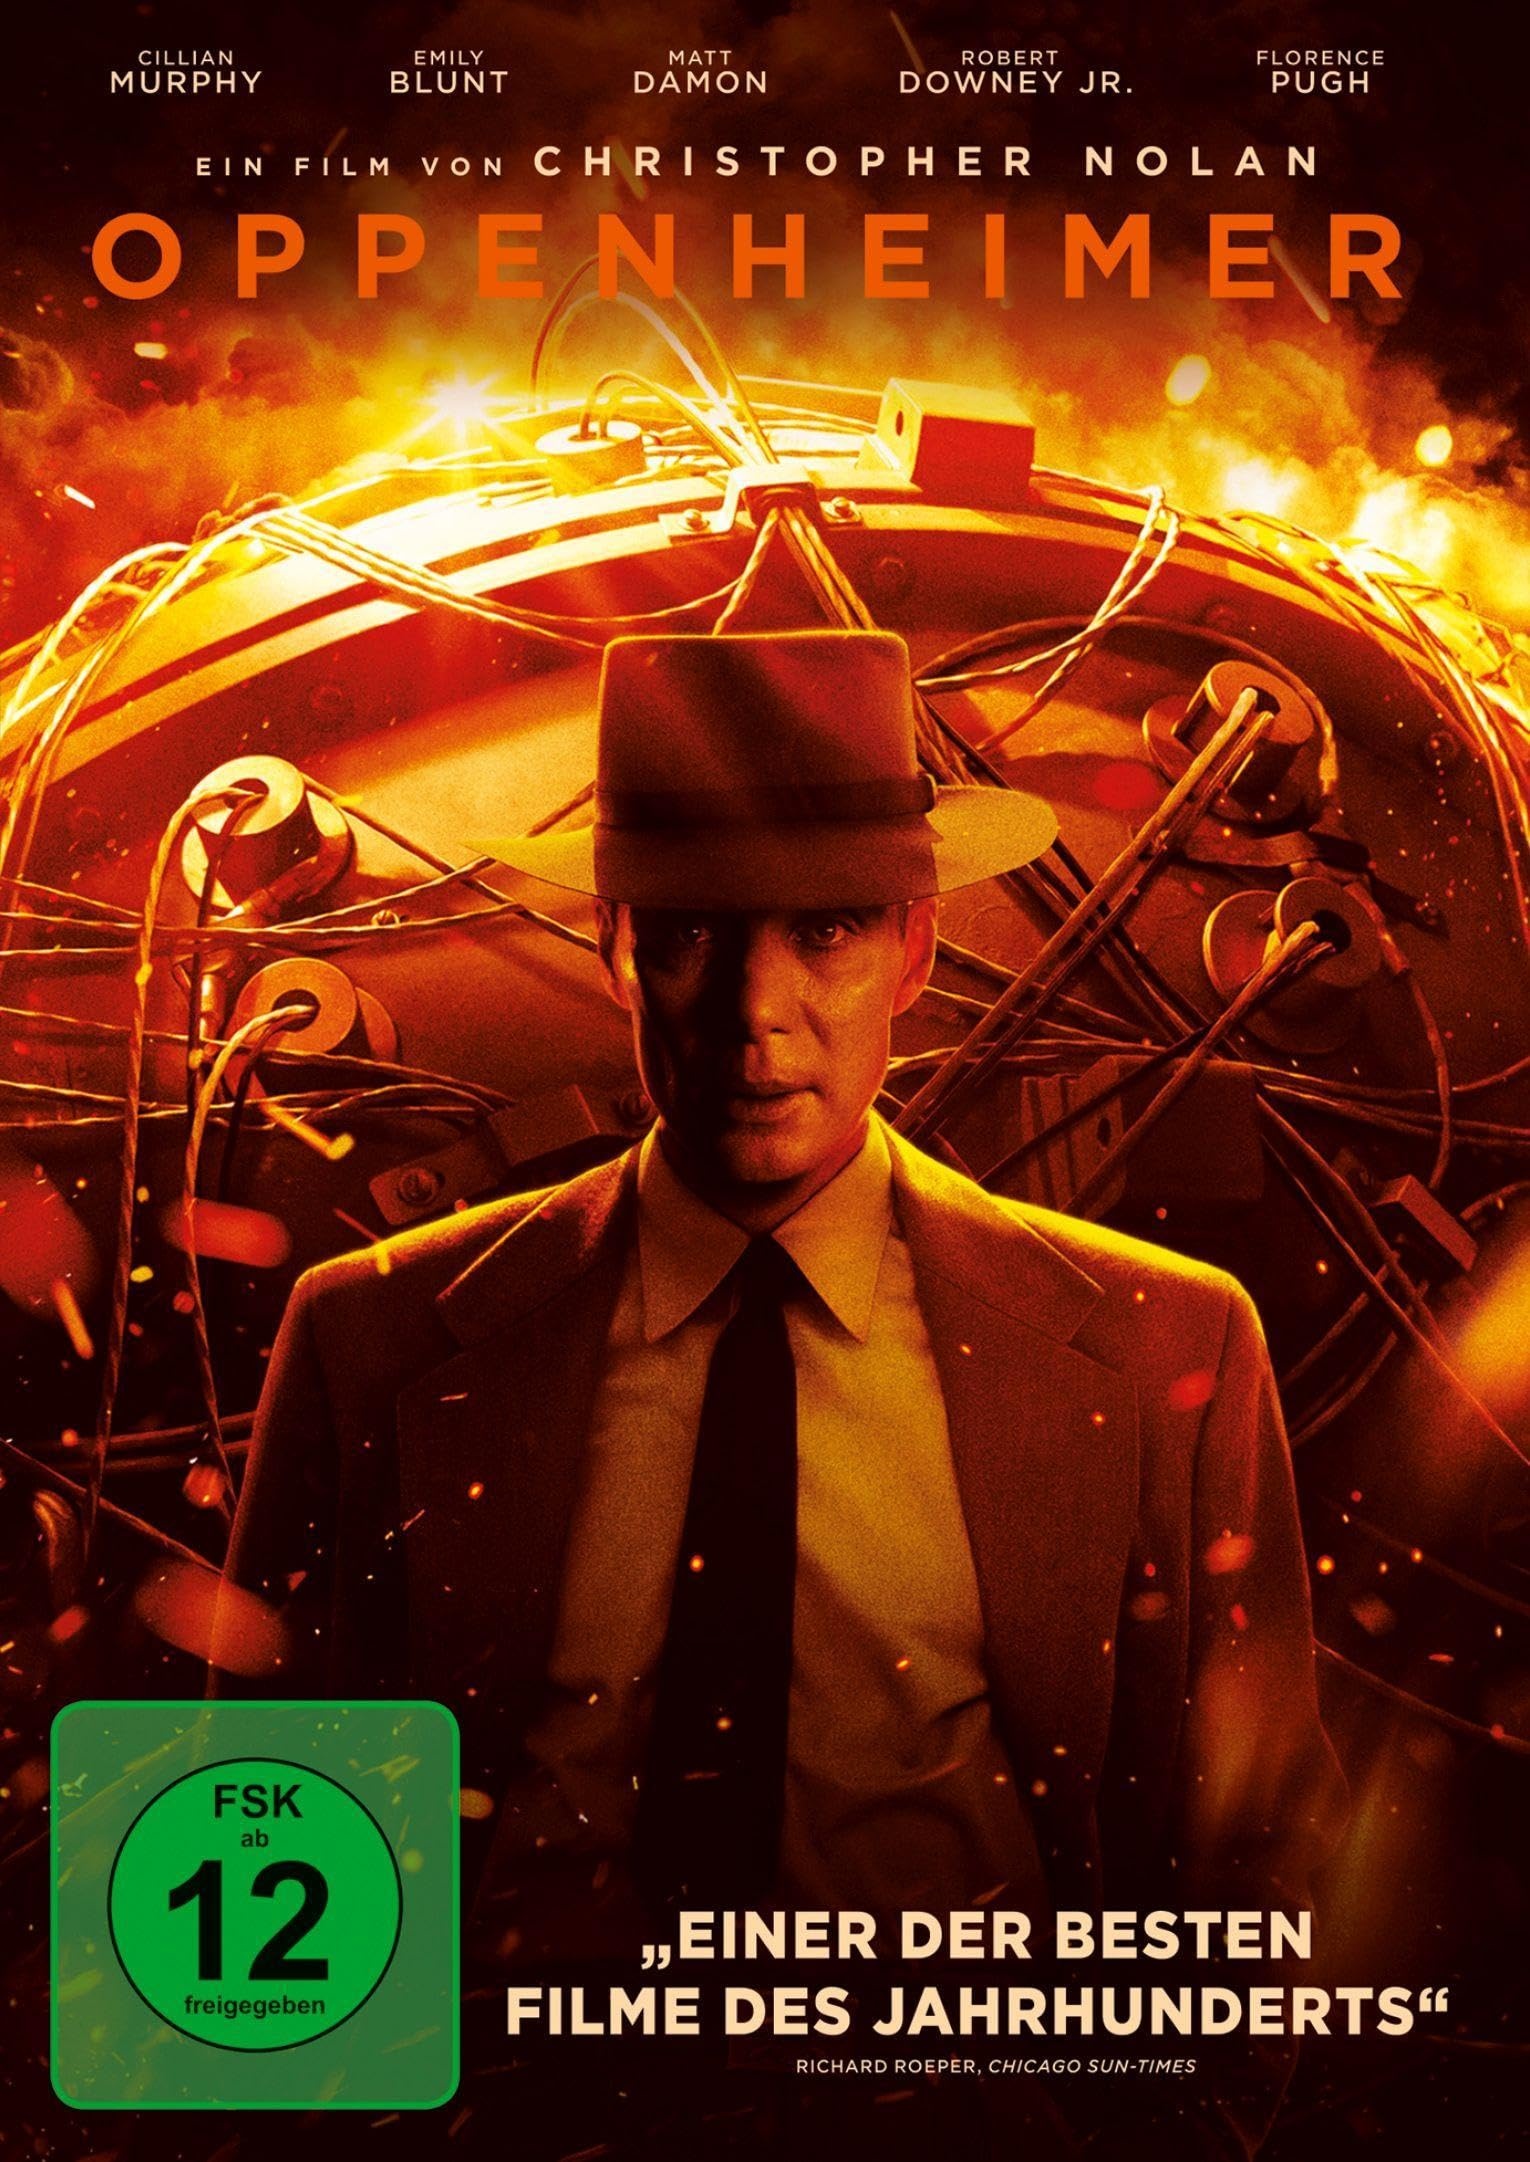 Oppenheimer [DVD] (Neu differenzbesteuert)